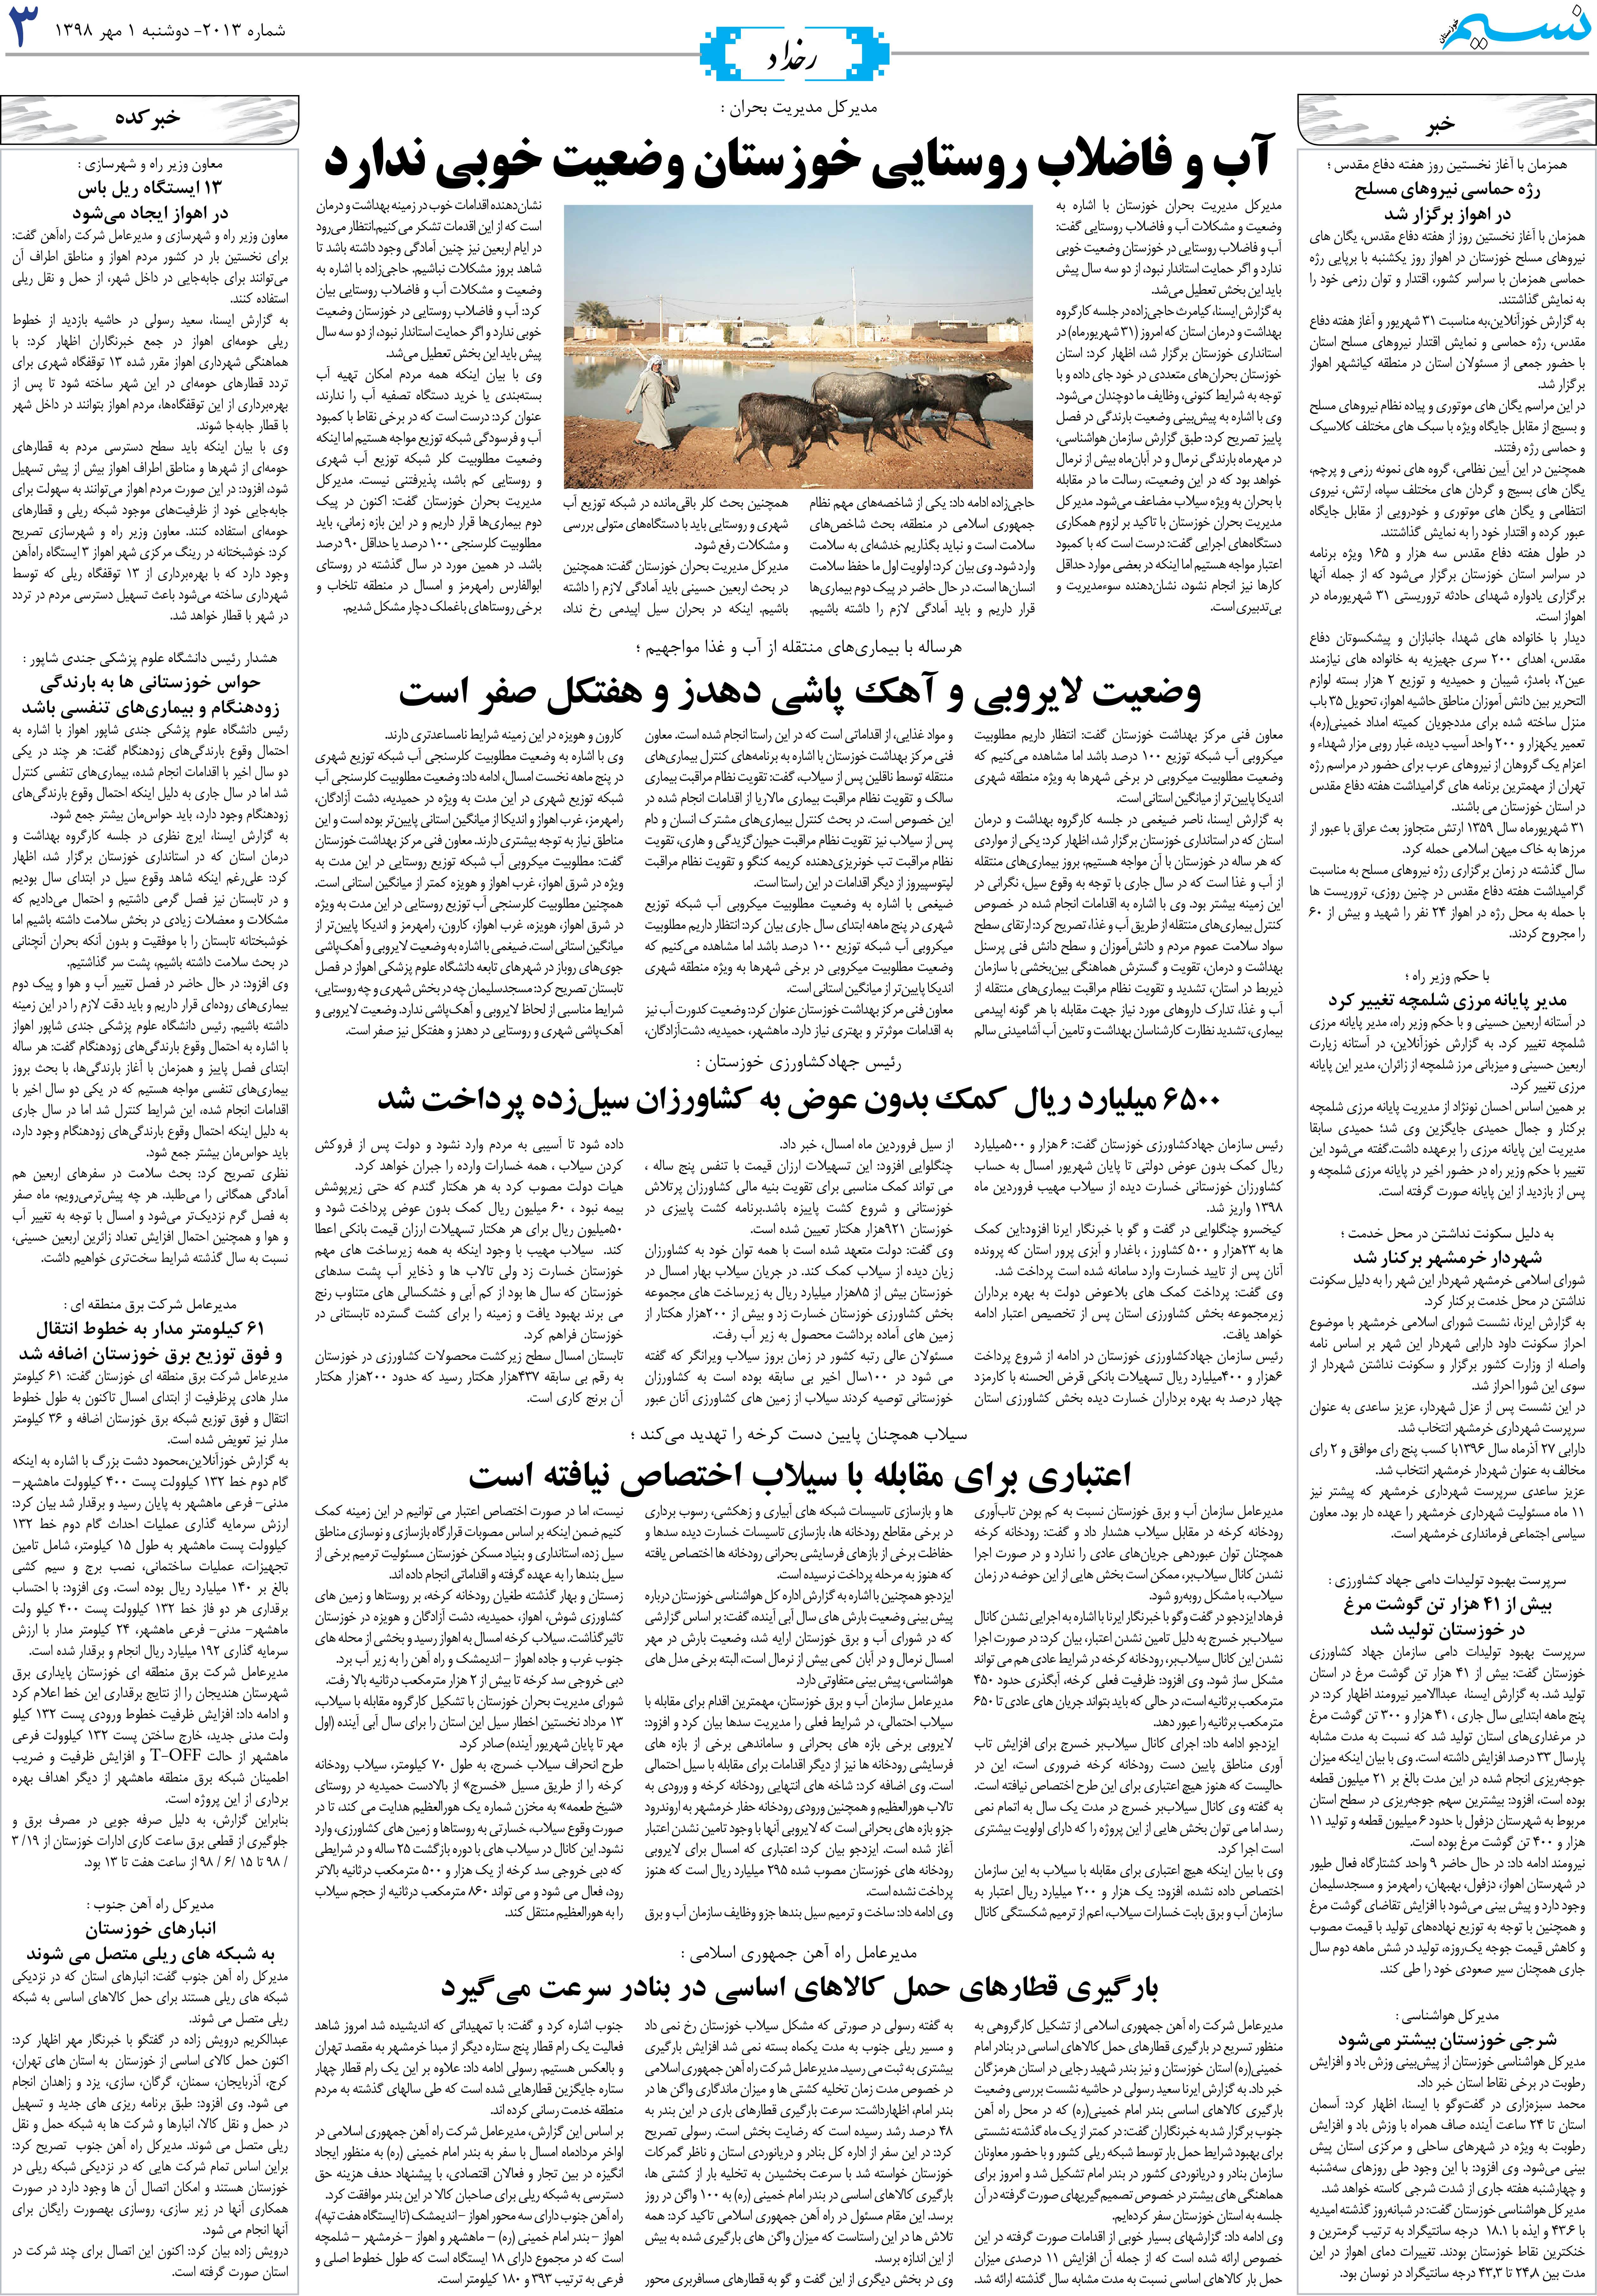 صفحه رخداد روزنامه نسیم شماره 2013